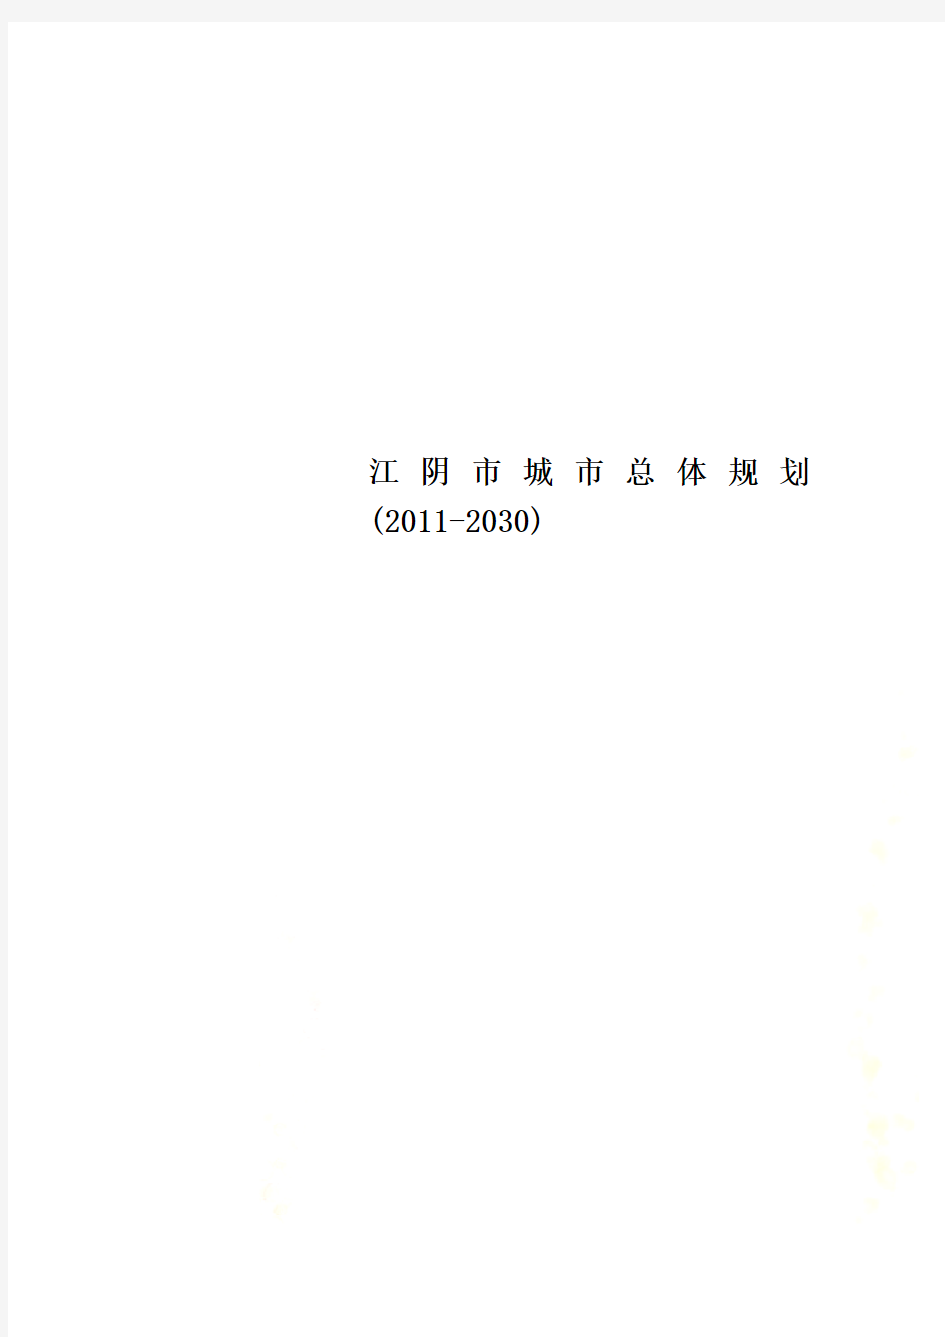 江阴市城市总体规划(2011-2030)